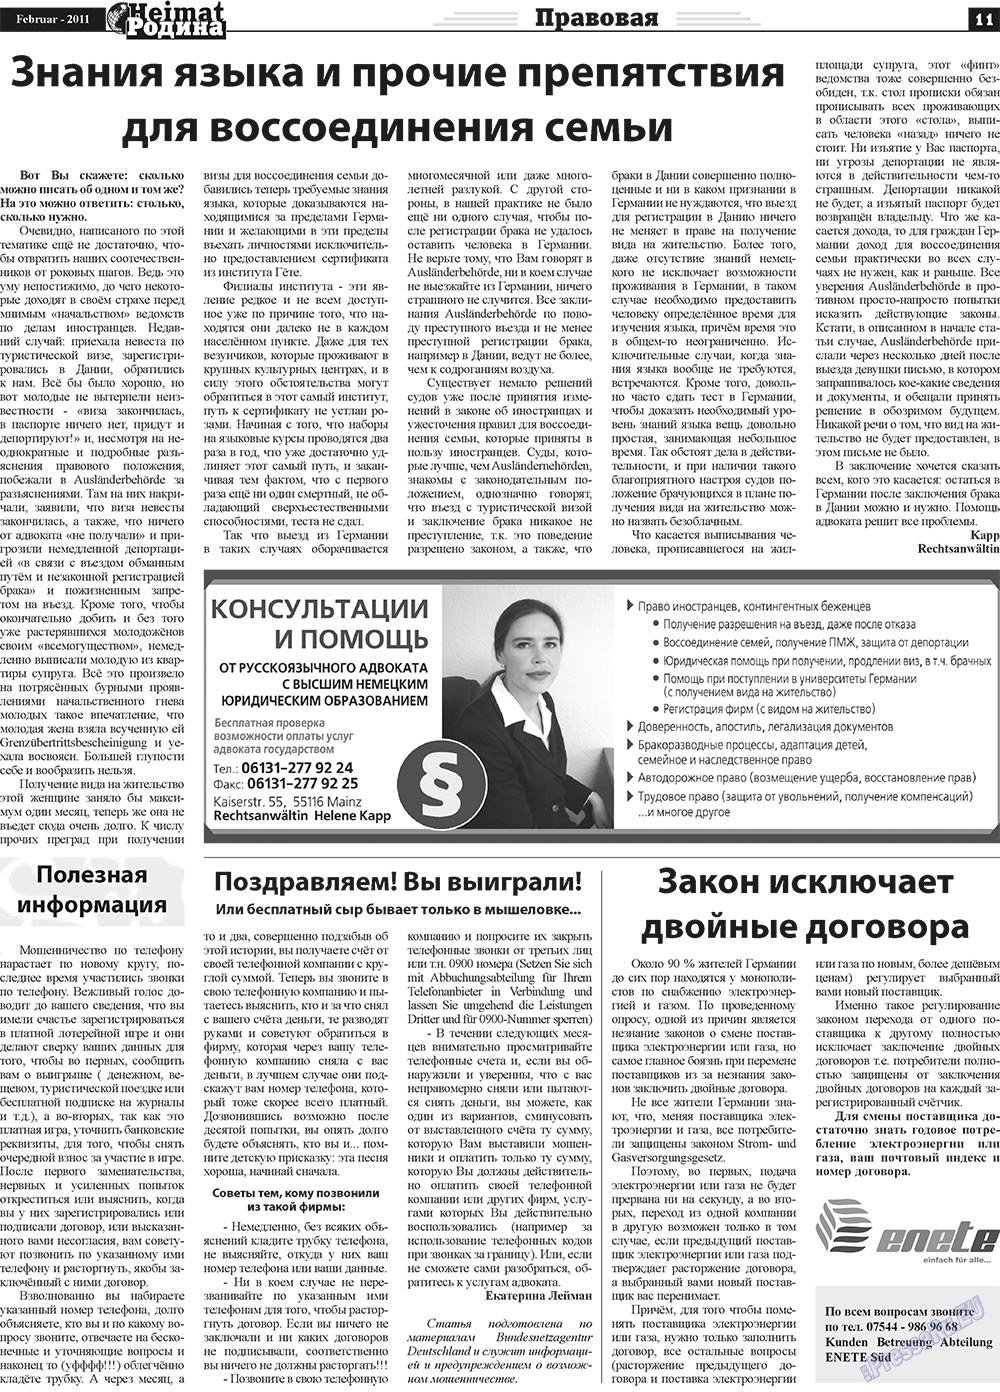 Heimat-Родина (газета). 2011 год, номер 2, стр. 11